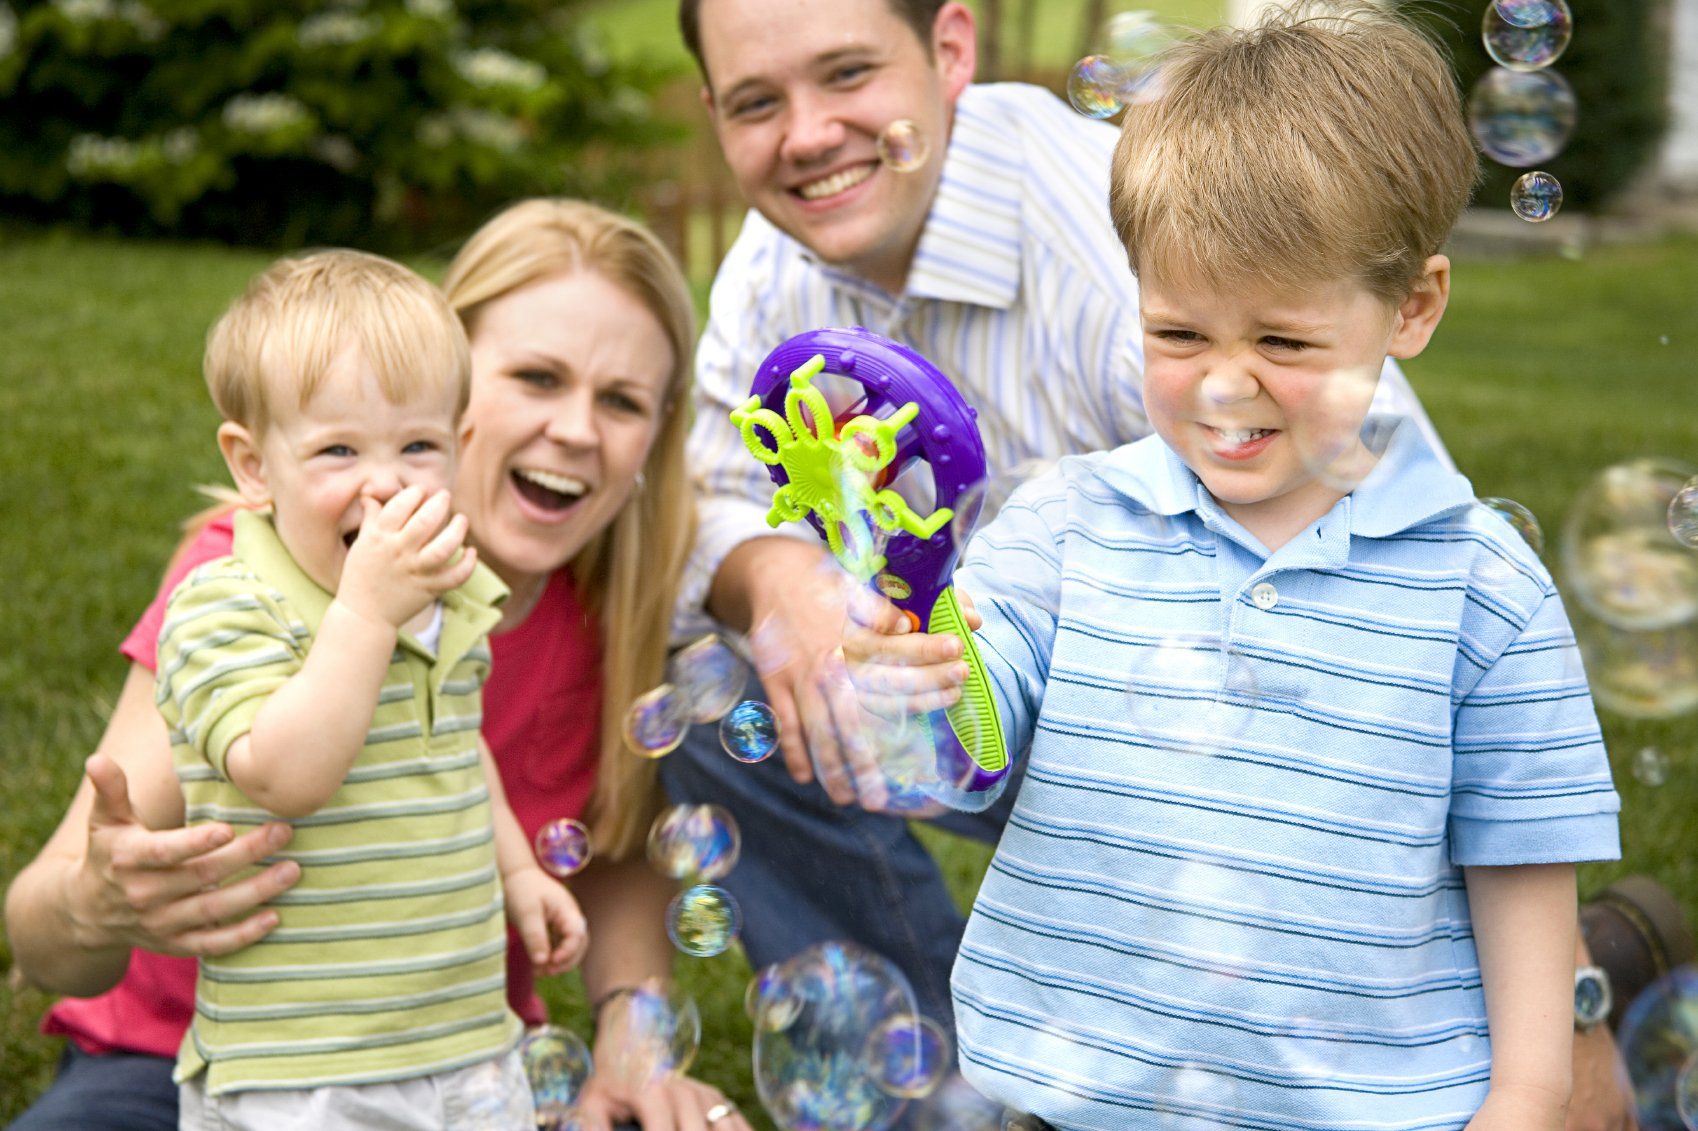 Familie mit Vater, Muter und zwei kleine Kinder im Garten am spielen